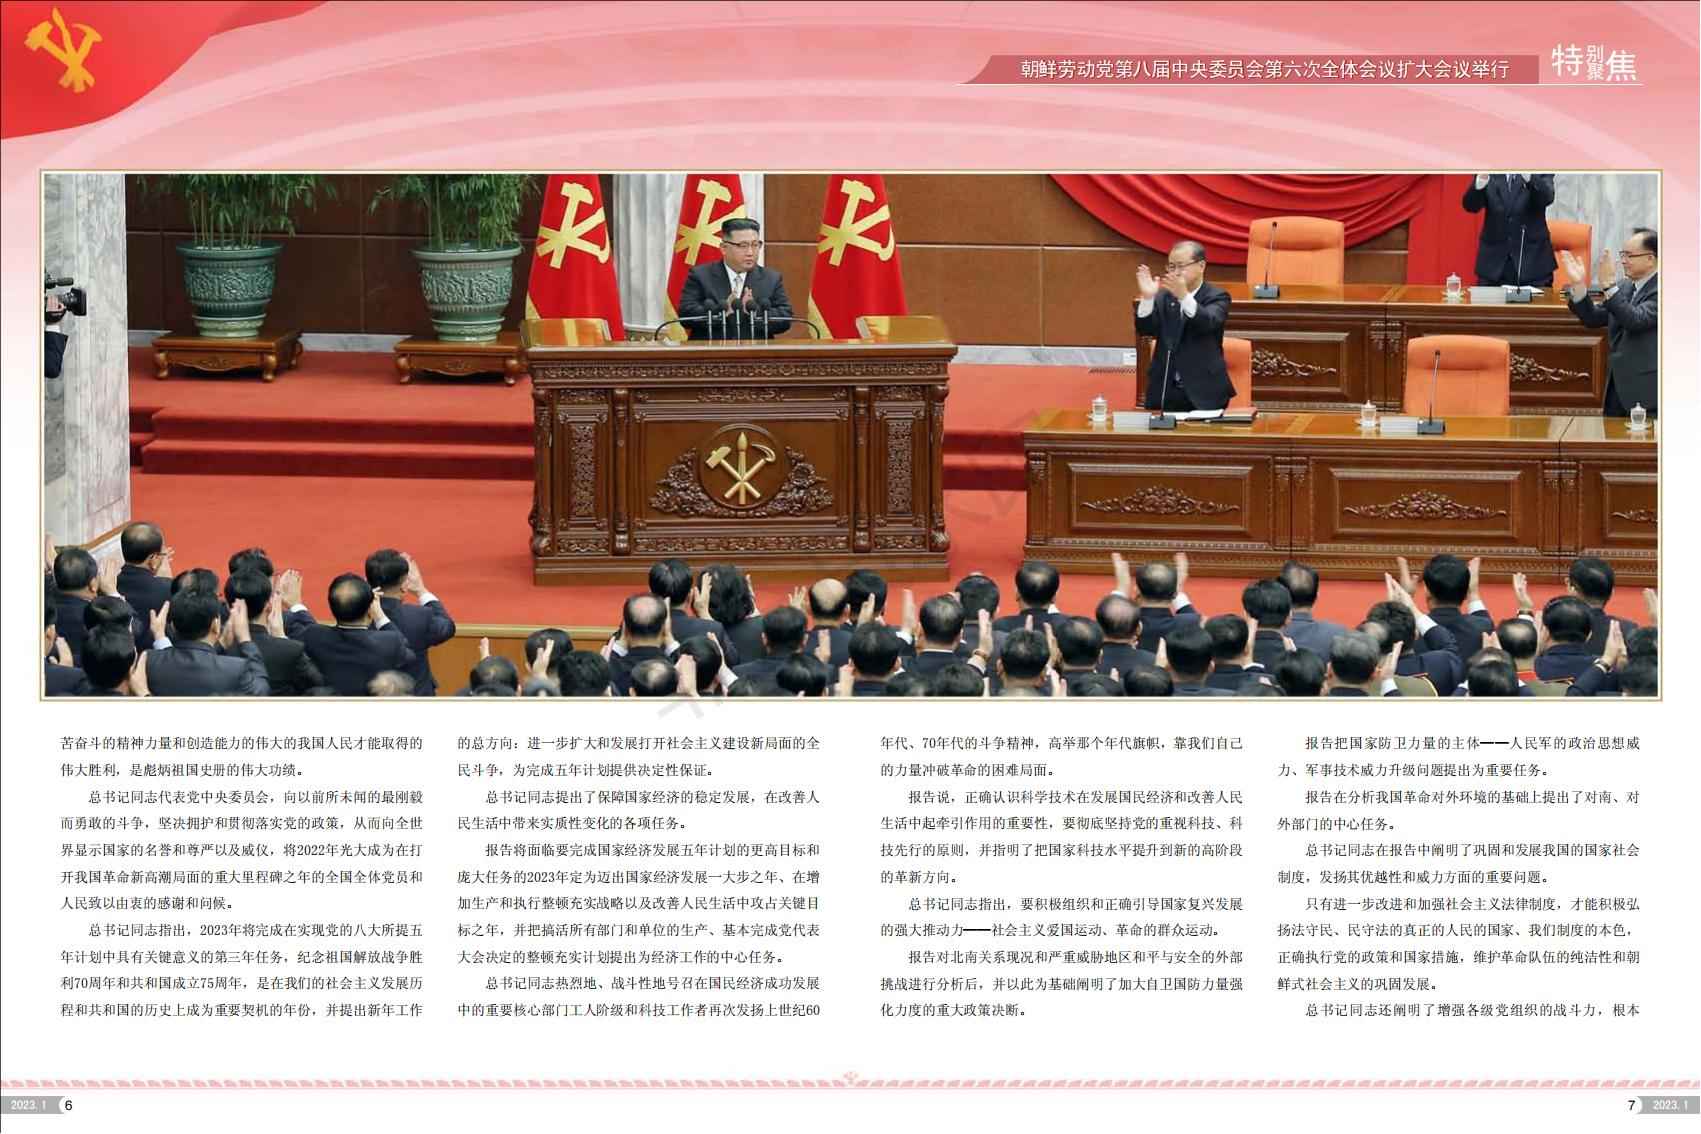 难得的视觉盛宴：画报《朝鲜》2023年第1期(高清组图) - 红歌会网